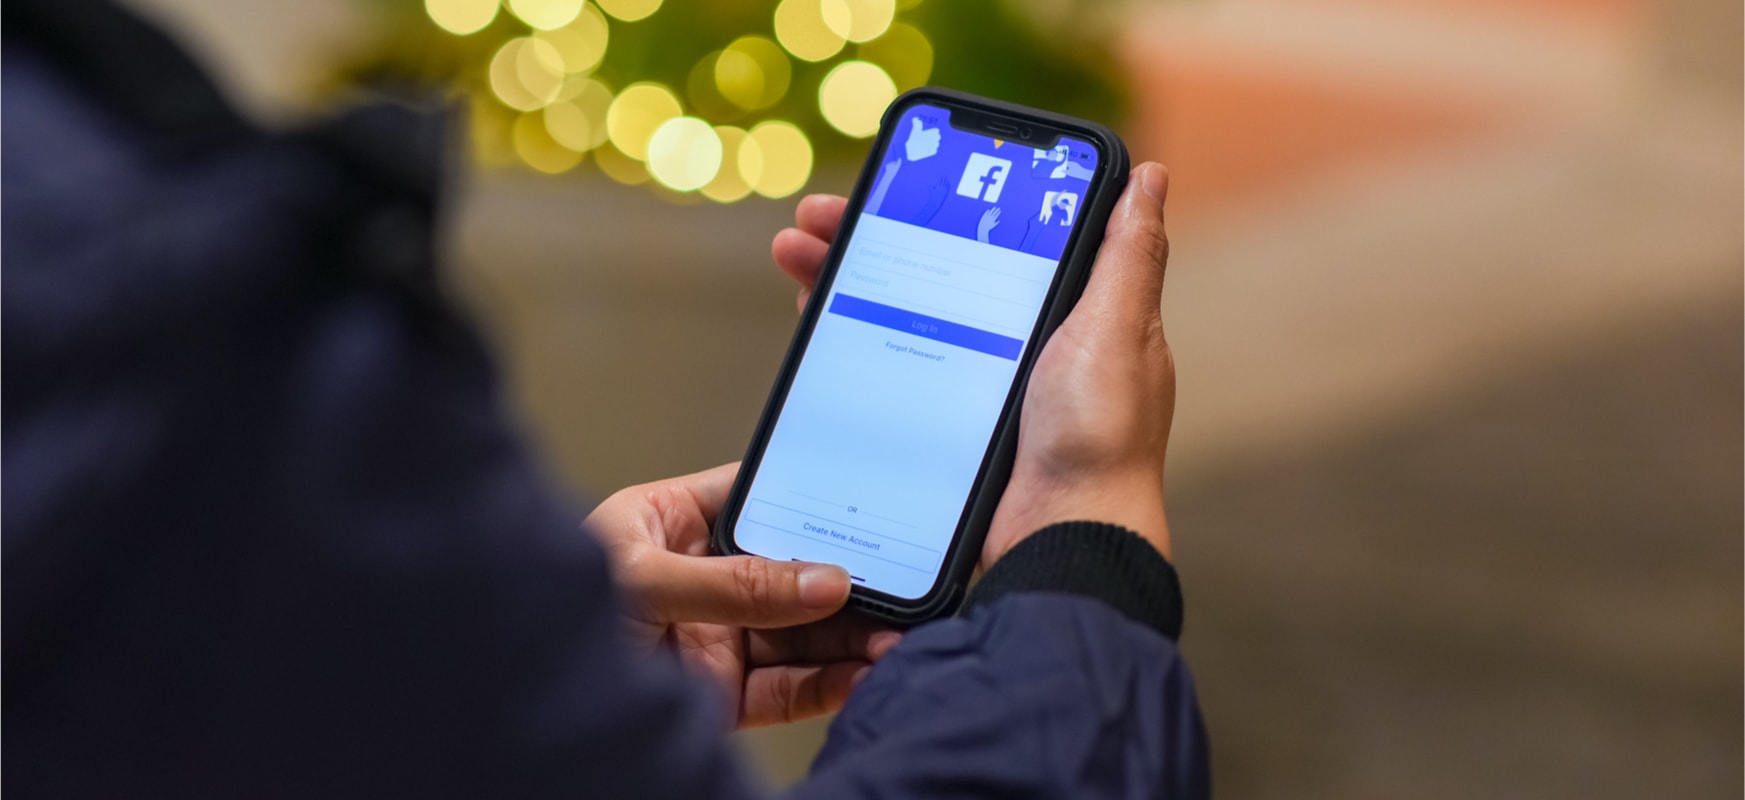 Azkenean, Facebook aplikazioa esku batekin erabil dezakezu. Hori da menu berria